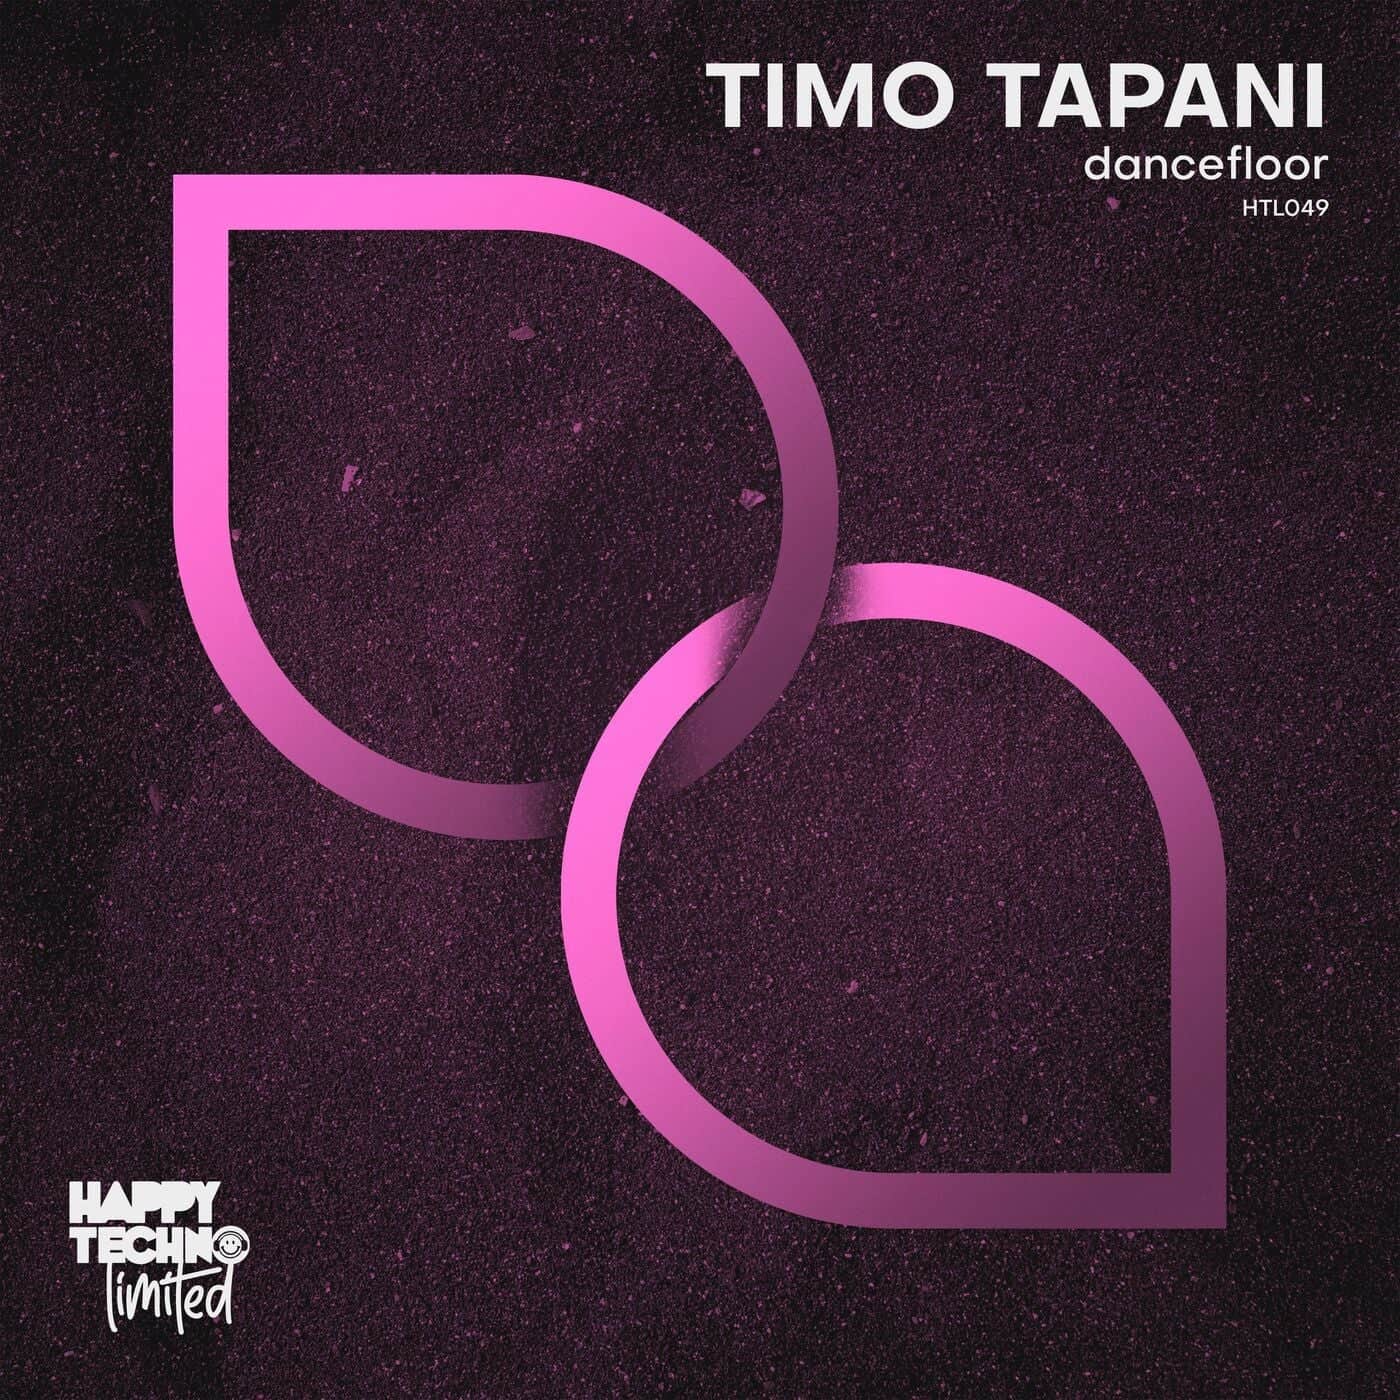 image cover: Timo Tapani - Dancefloor / HTL049